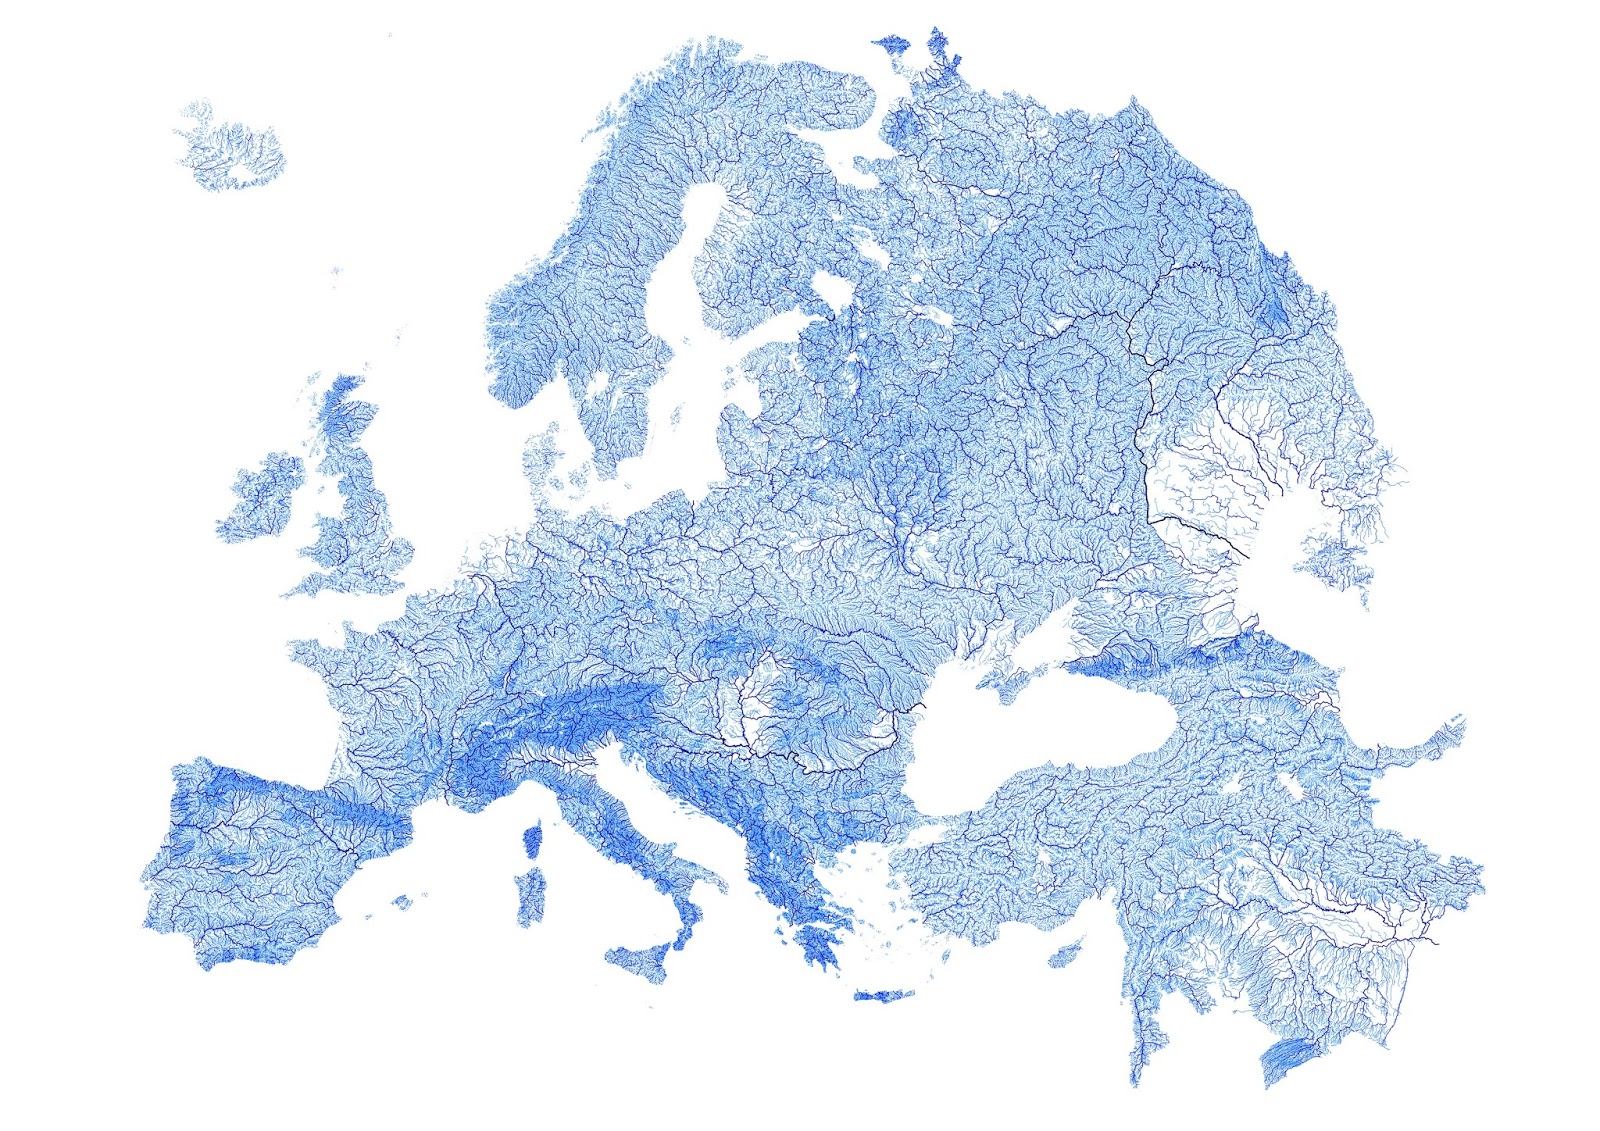 EU_rivers.jpg